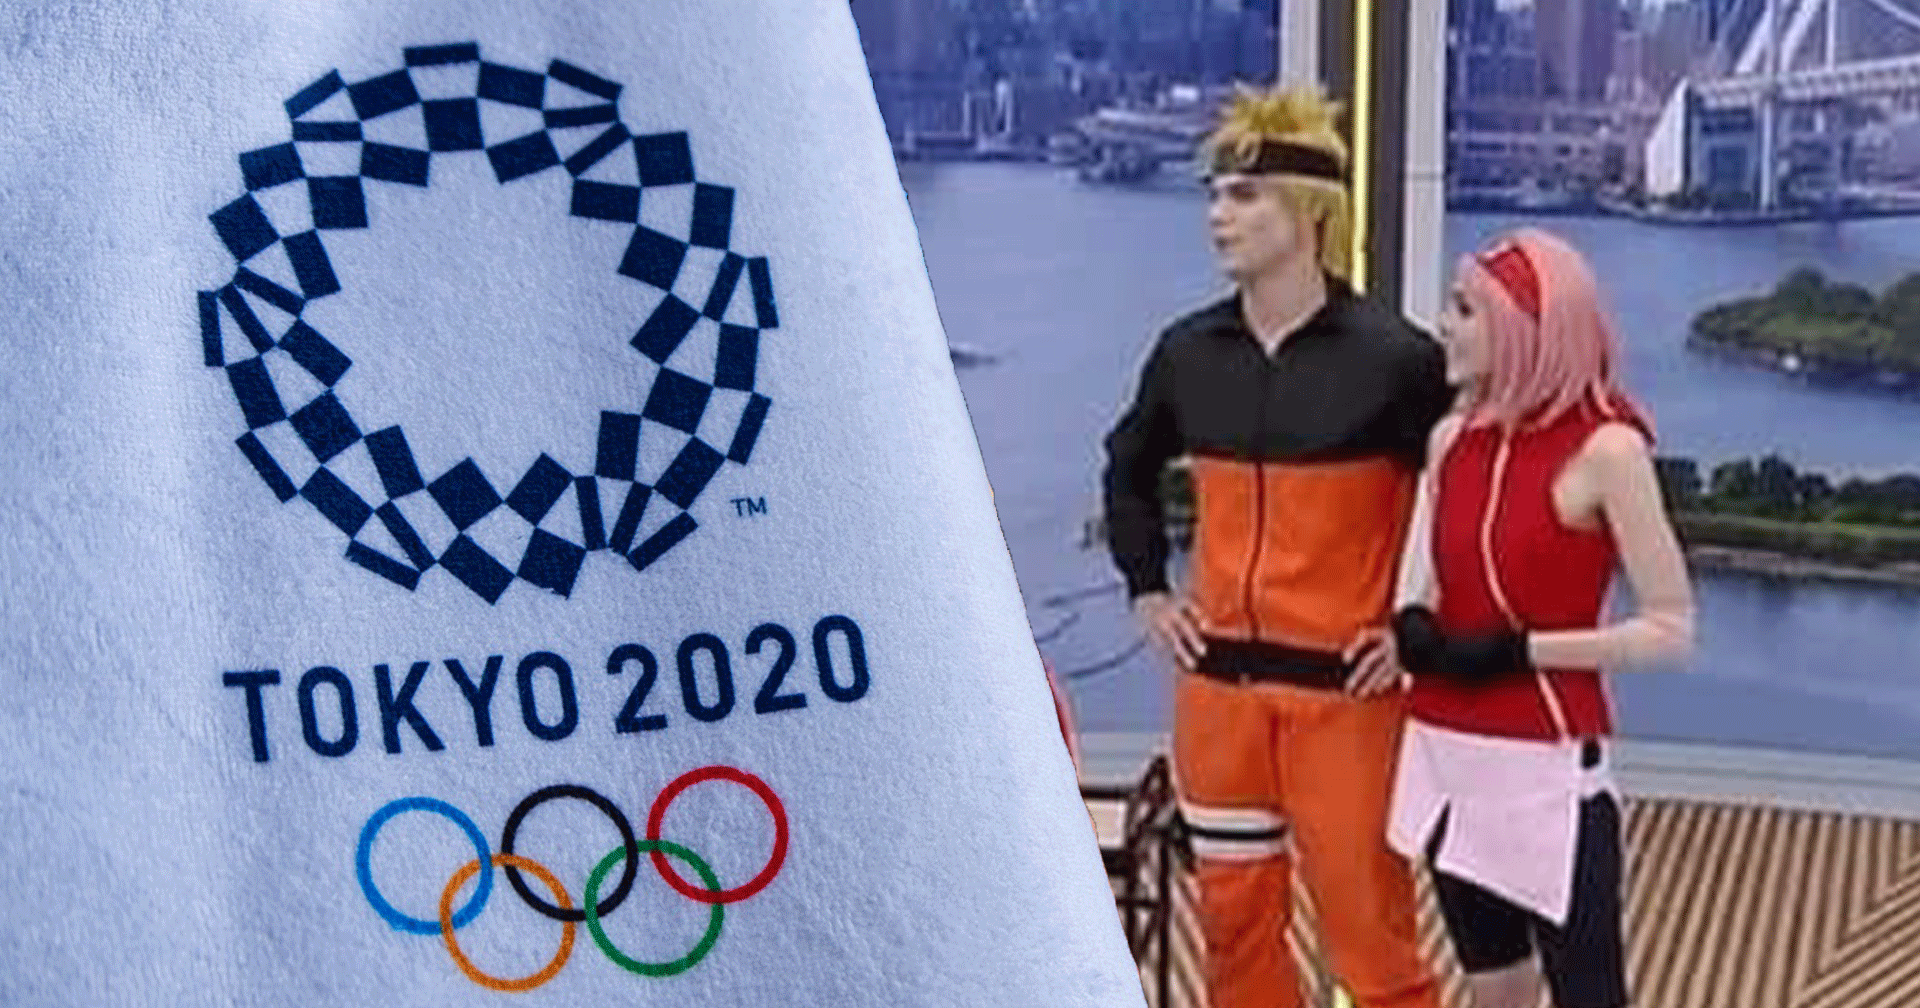 พิธีกรรายการถ่ายทอดสด Olympic แต่งคอสเพลย์เป็นตัวละครจาก Naruto